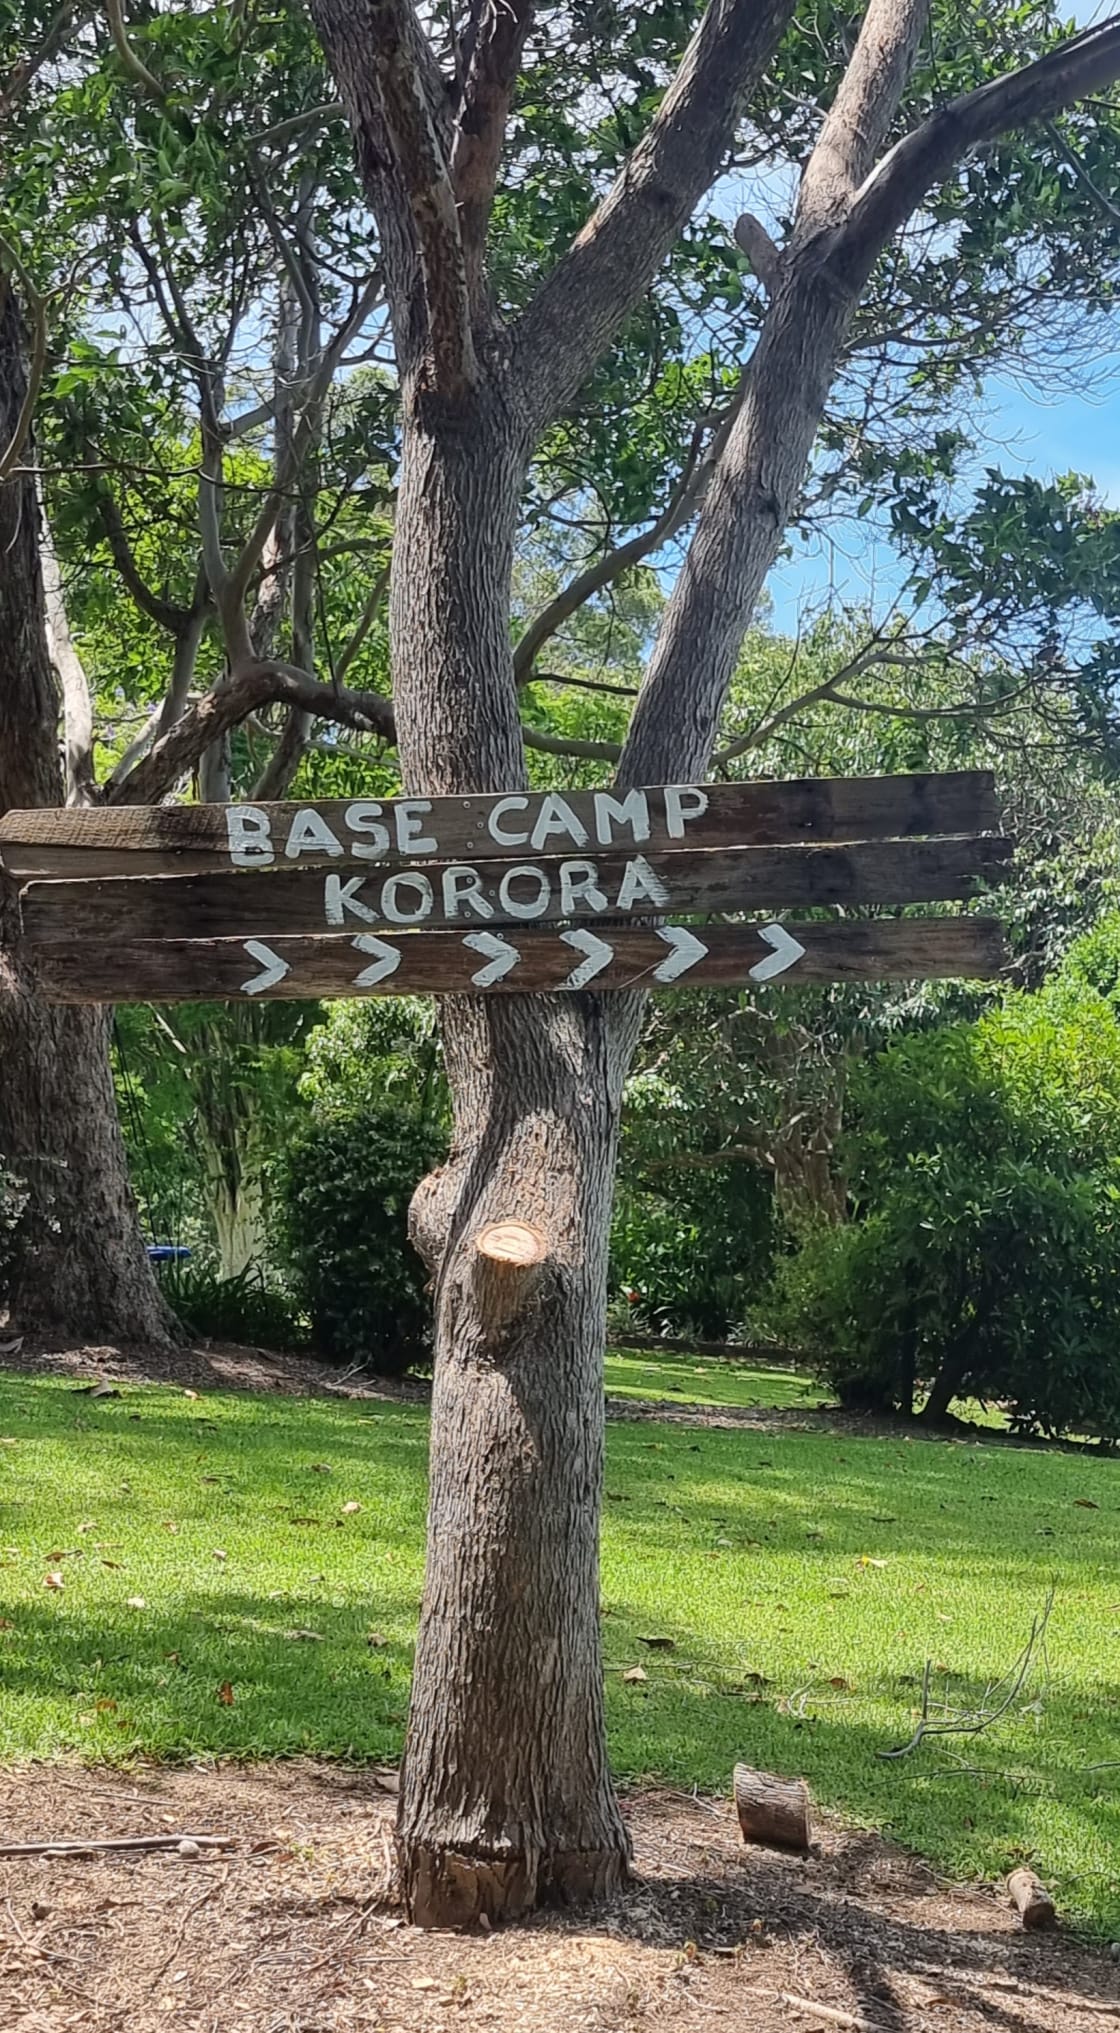 Base Camp Korora